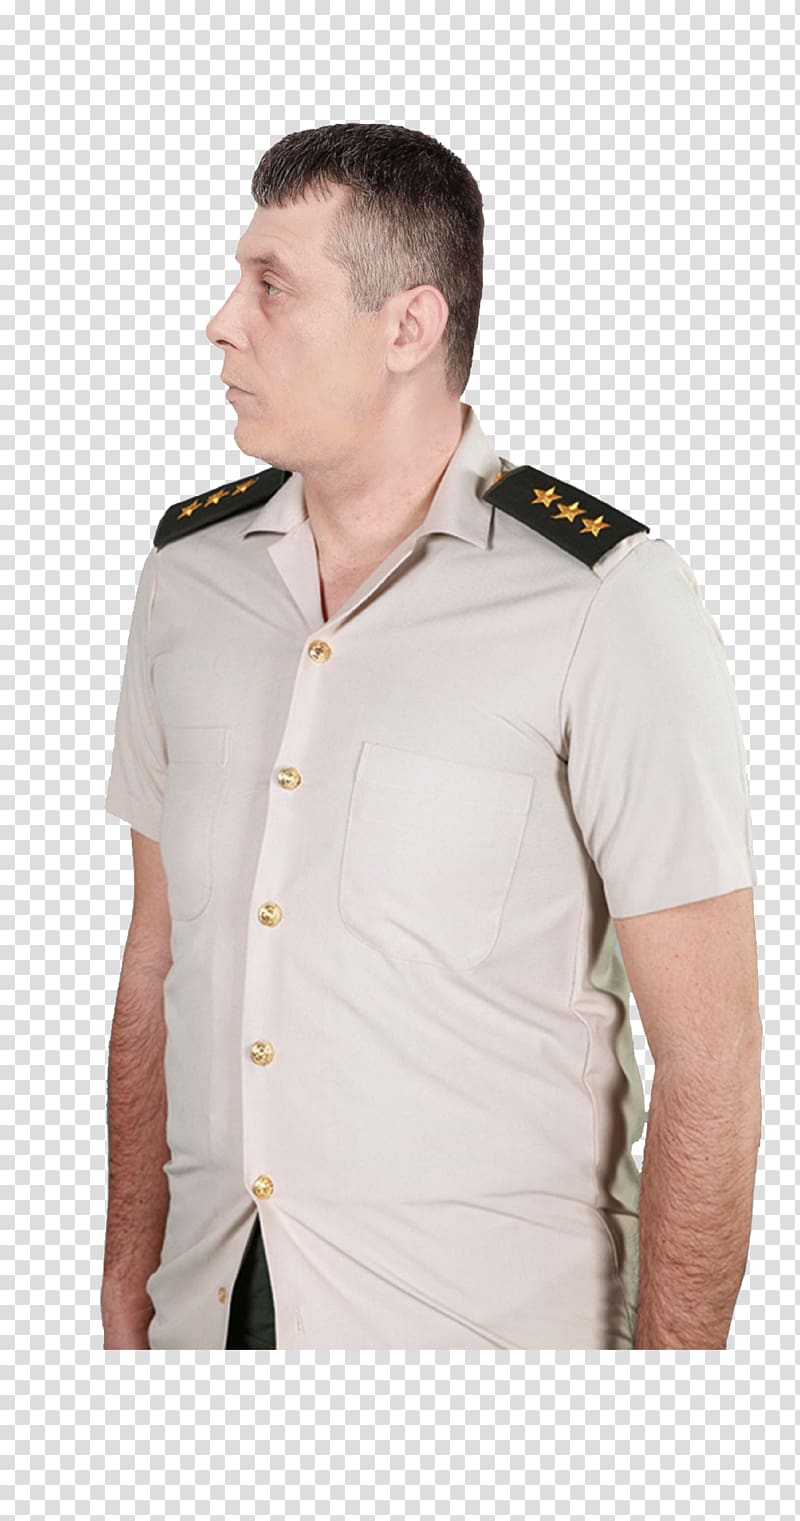 T-shirt Soldier Uniform Dress, T-shirt transparent background PNG clipart